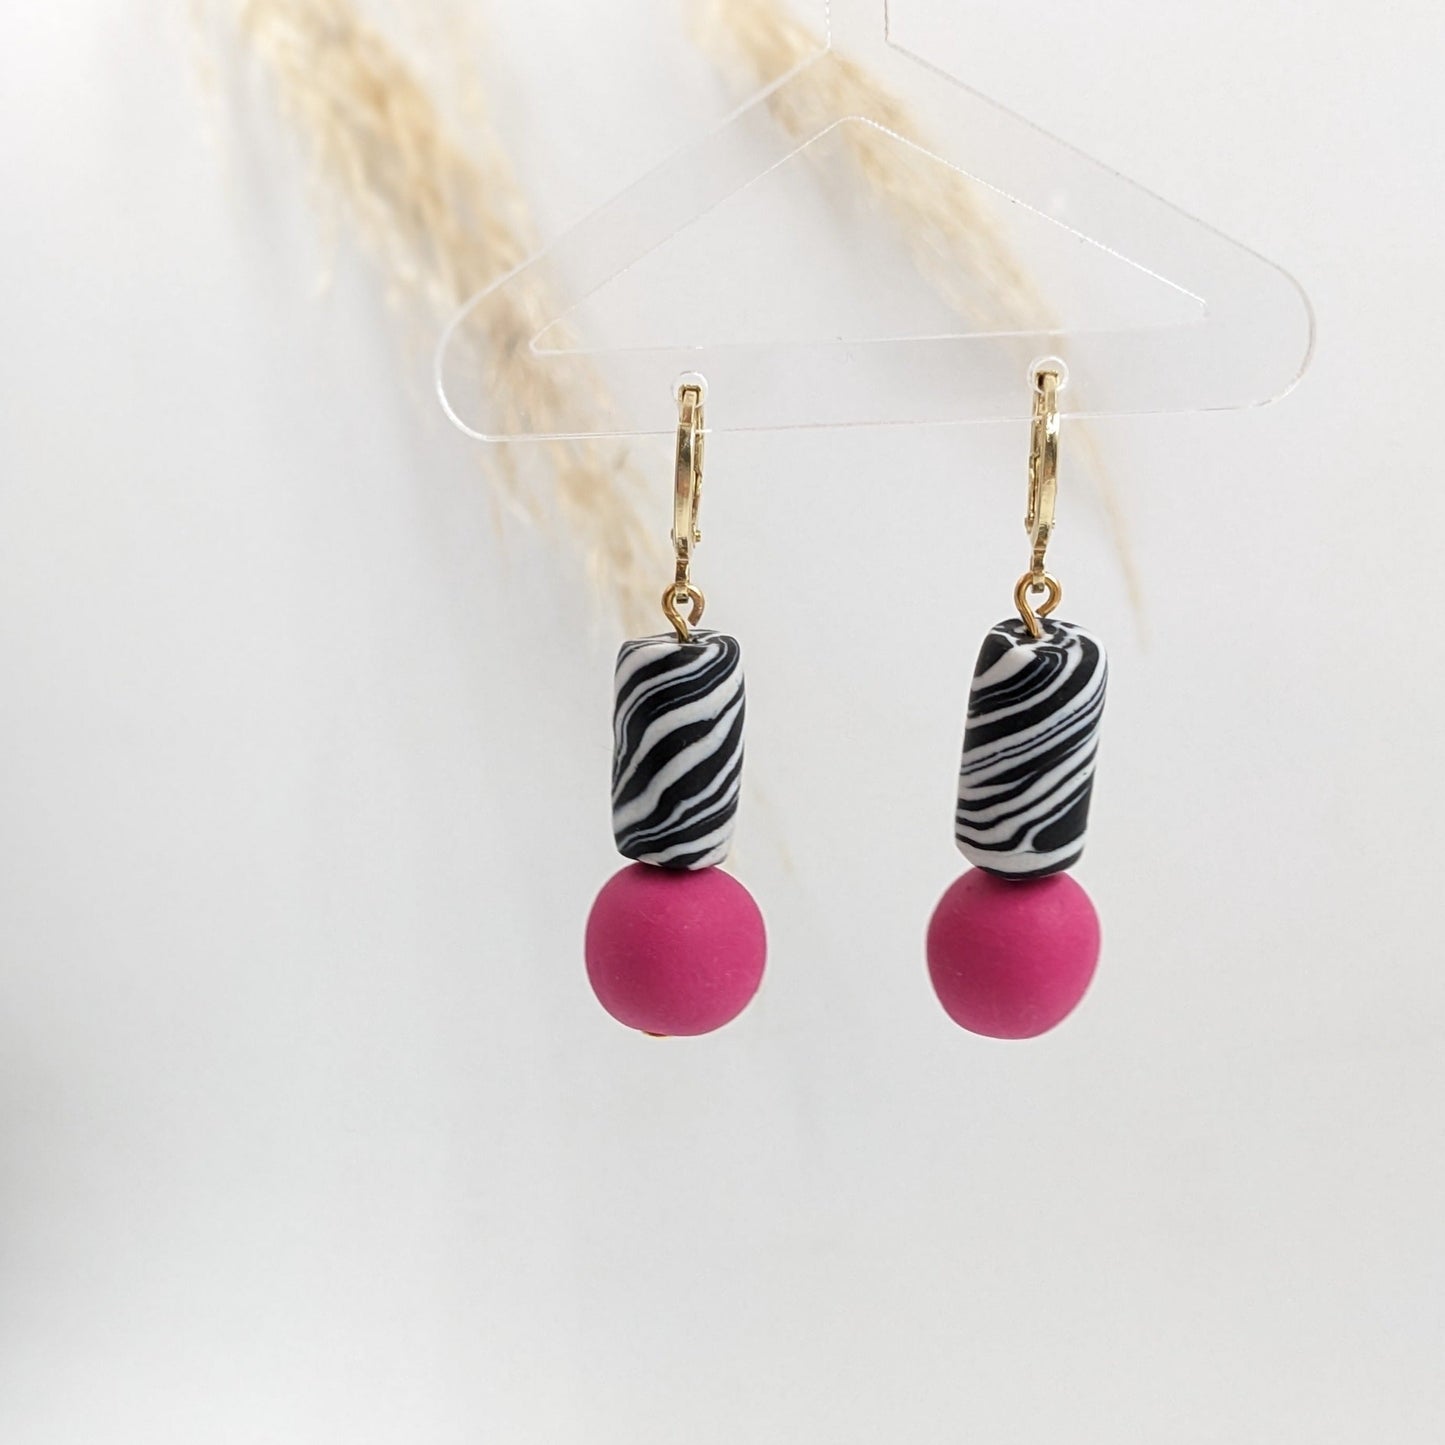 Zebra oorbellen met roze kraal